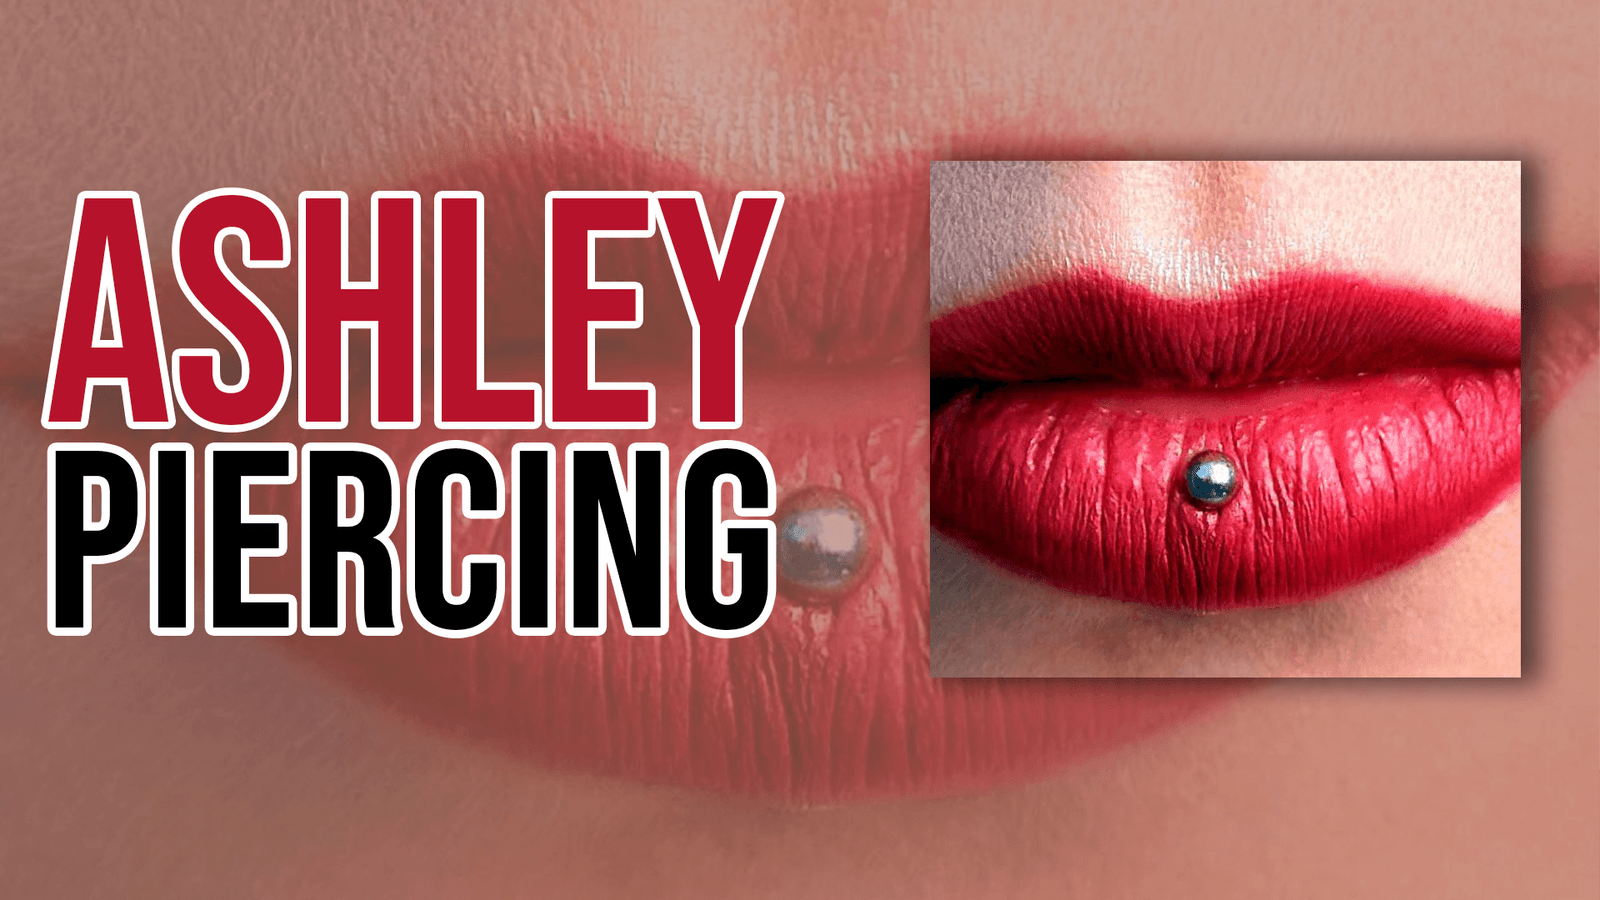 Ashley Piercing